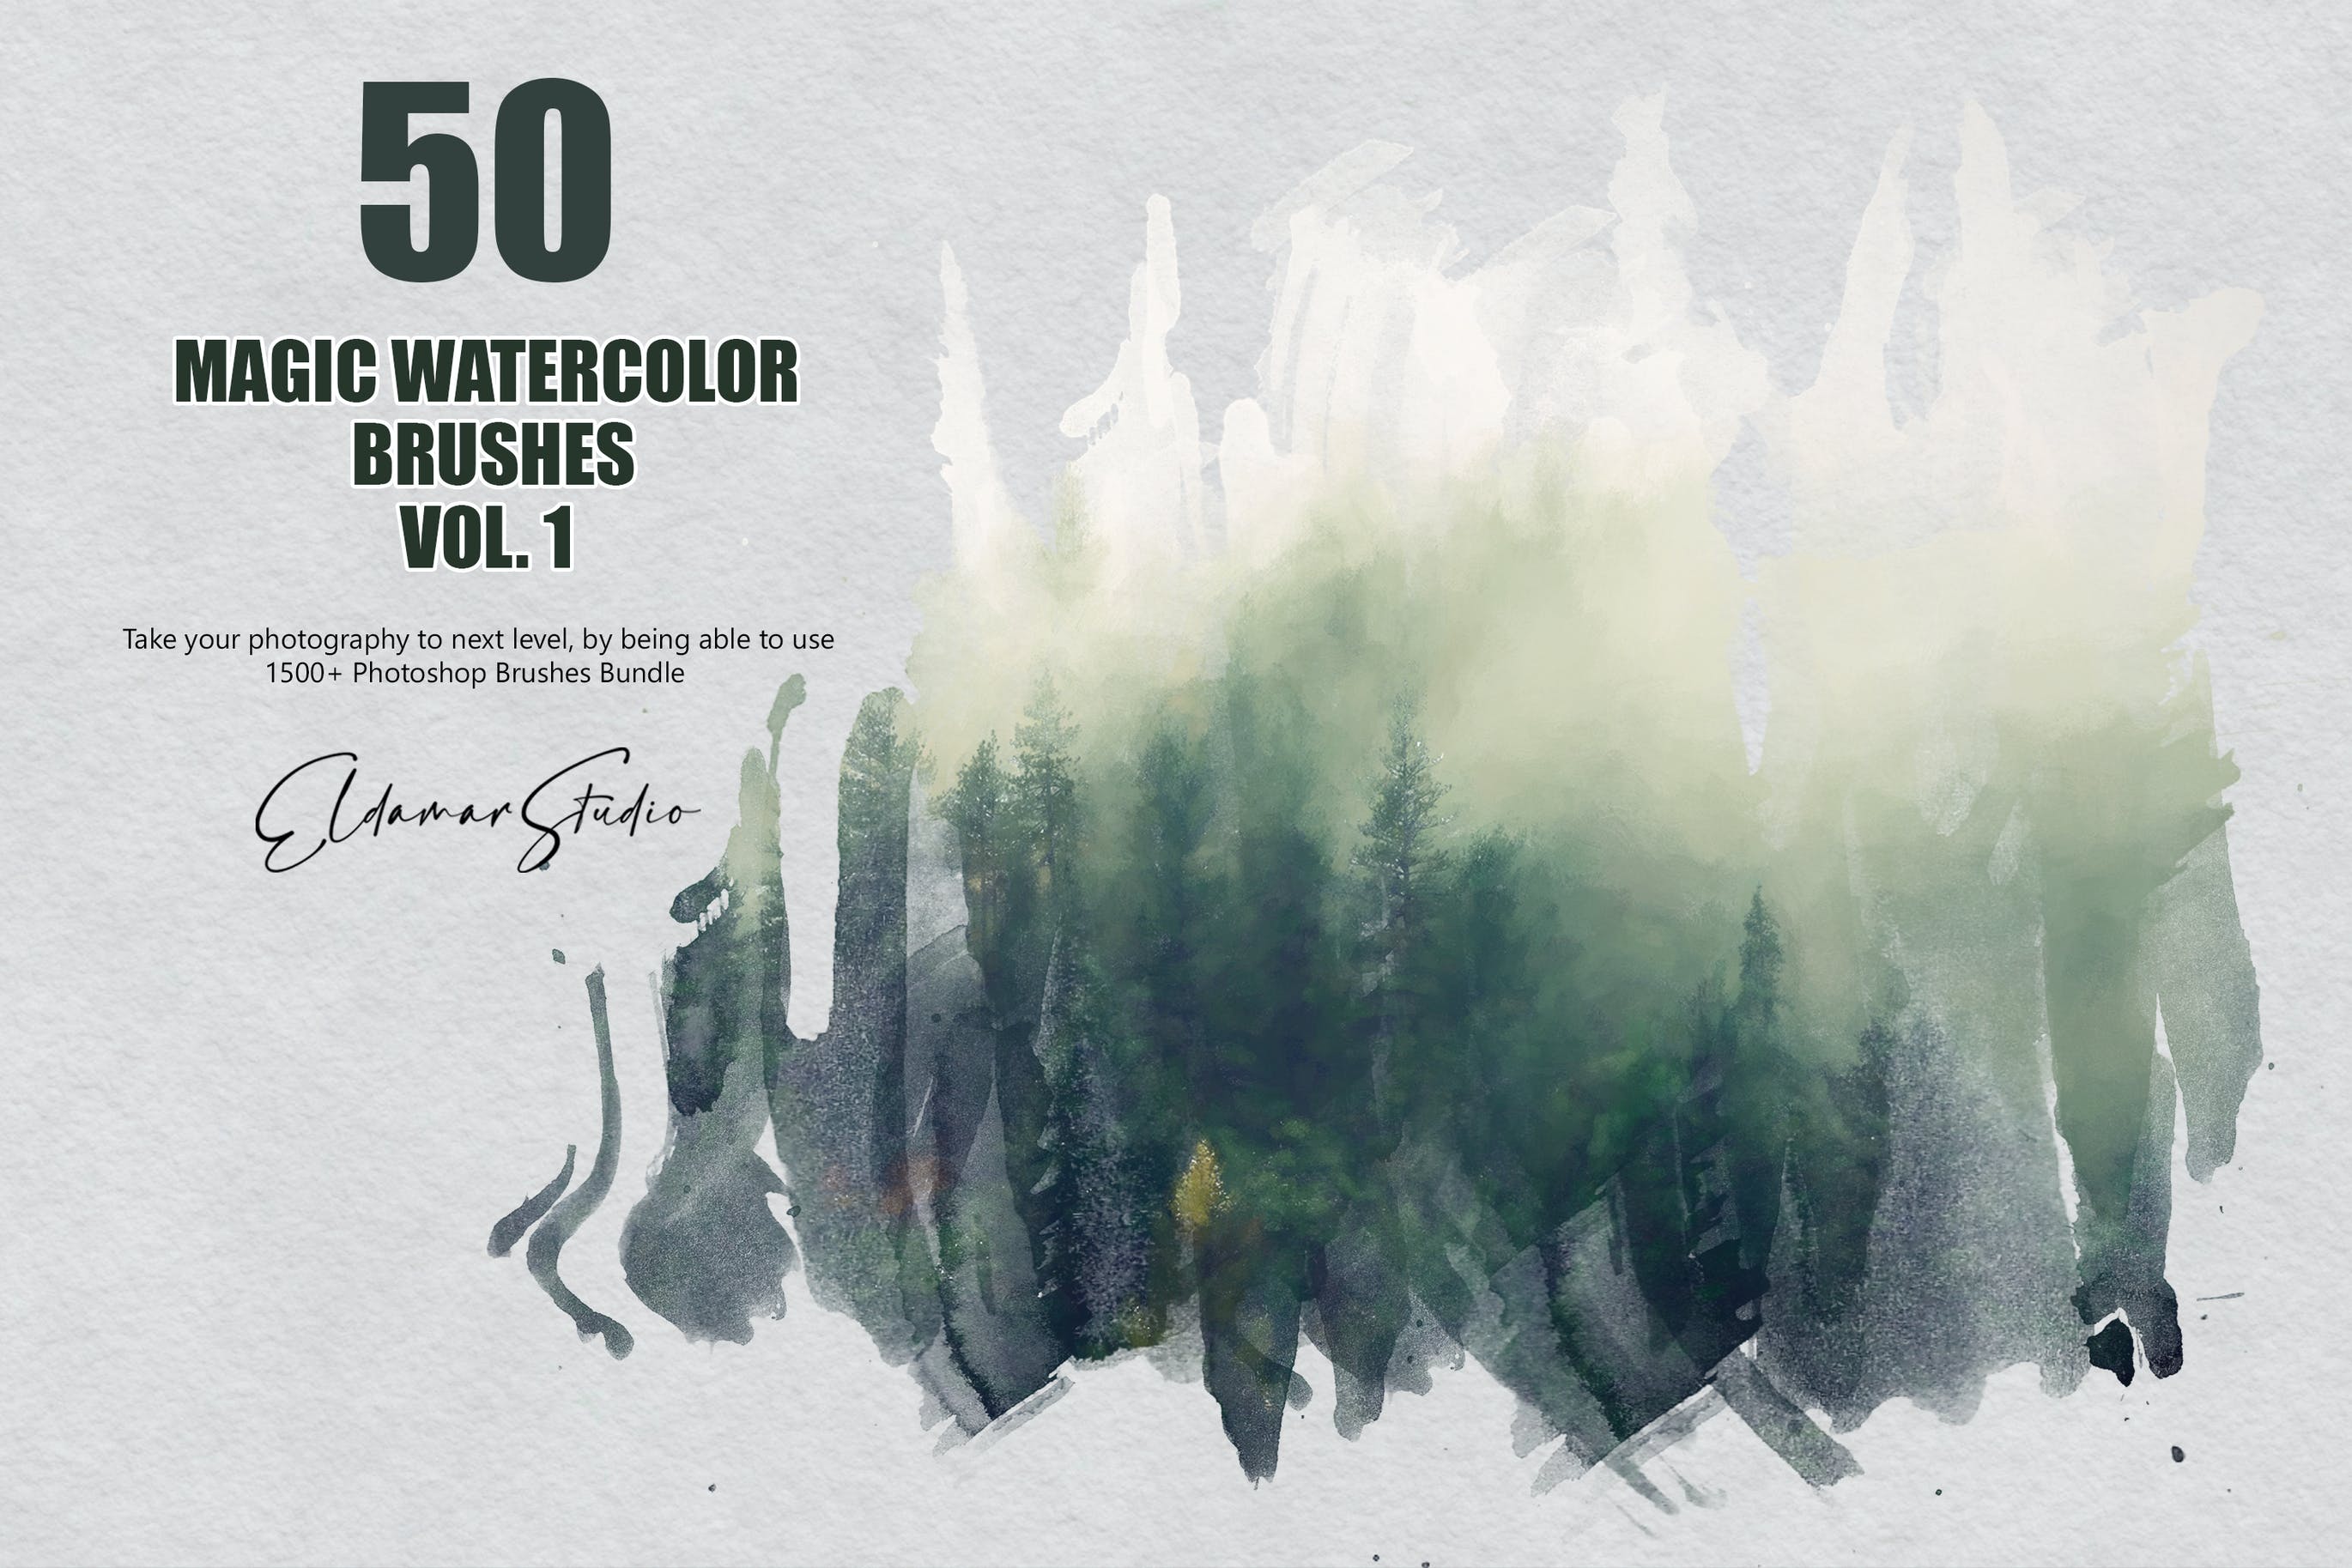 50个魔法水彩ps笔刷v1 50 Magic Watercolor Brushes – Vol. 1 笔刷资源 第1张